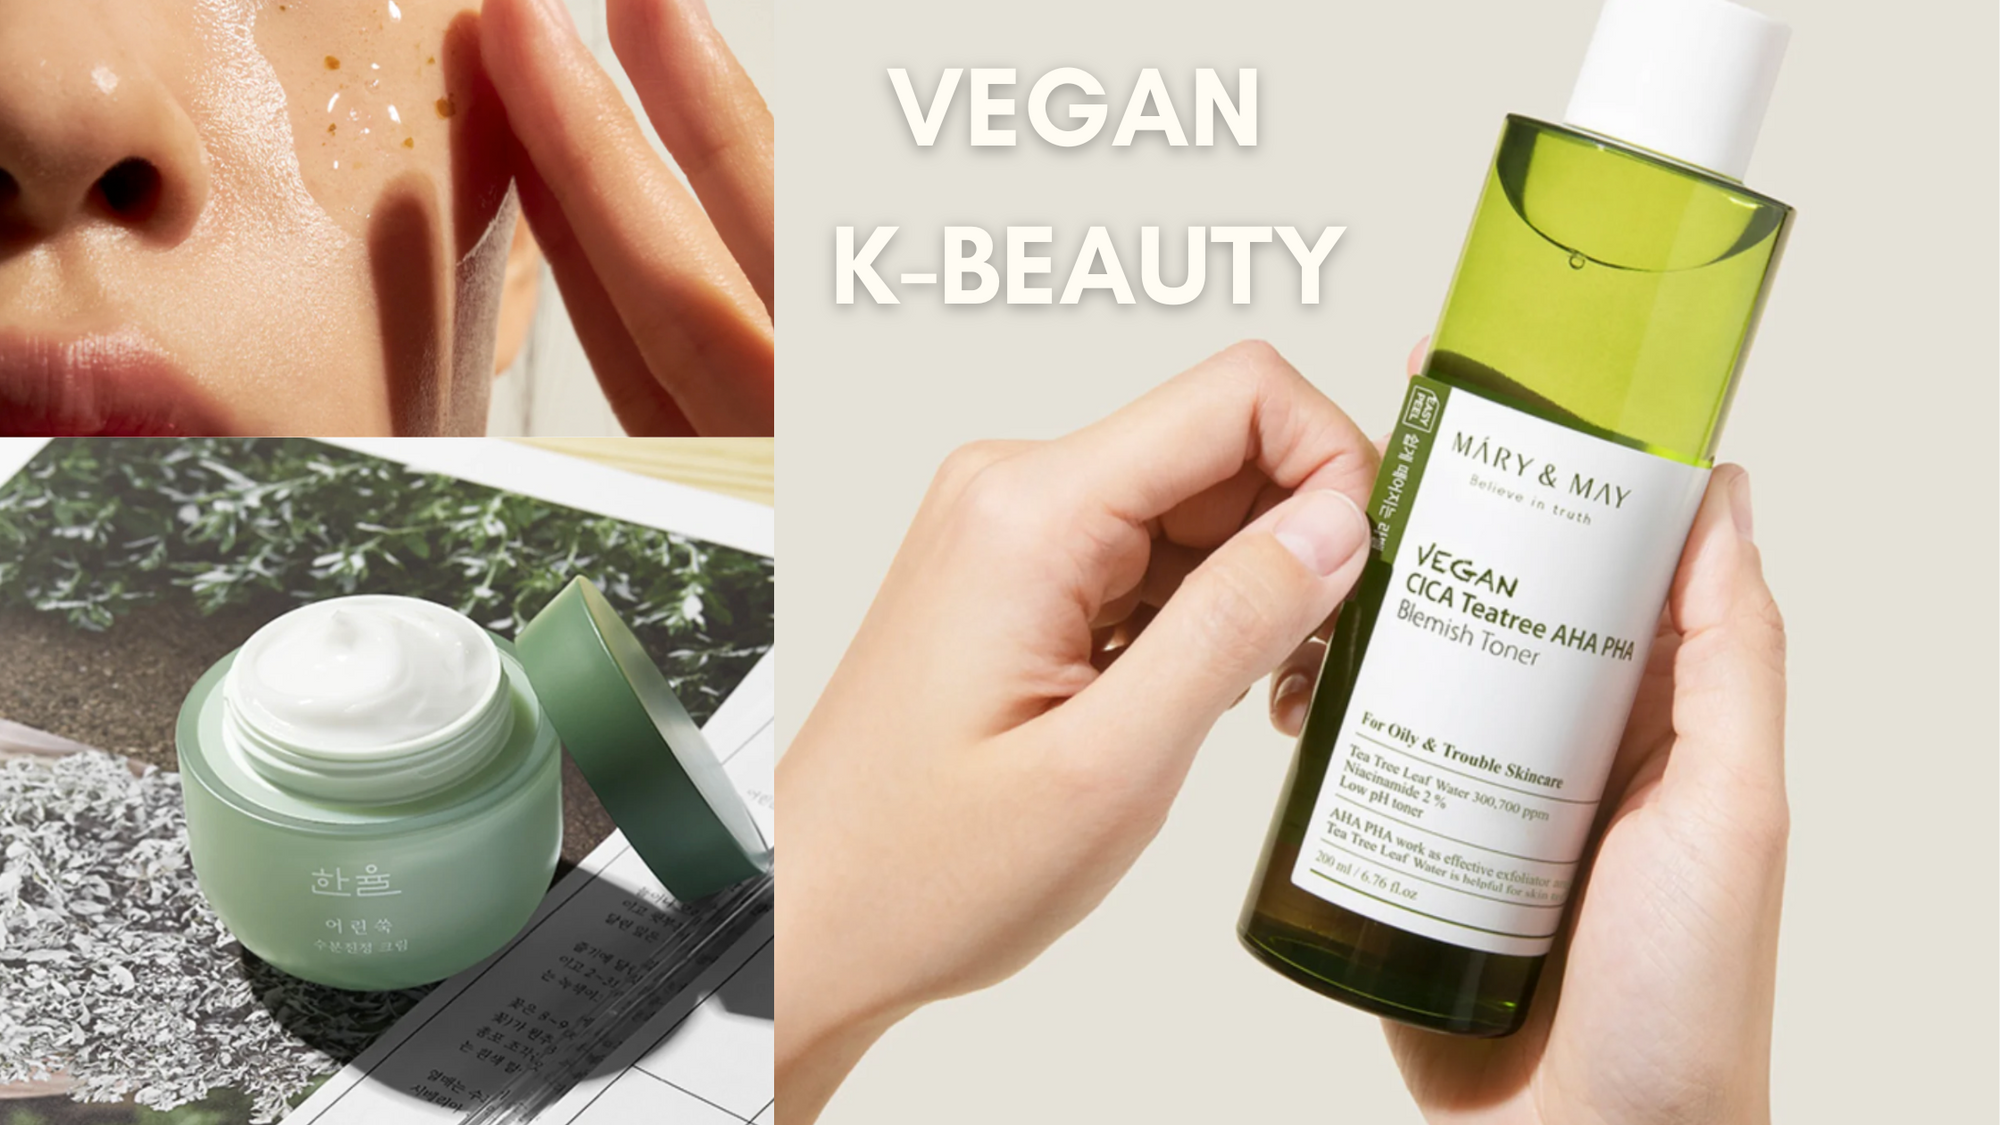 Vegan K-Beauty Brands